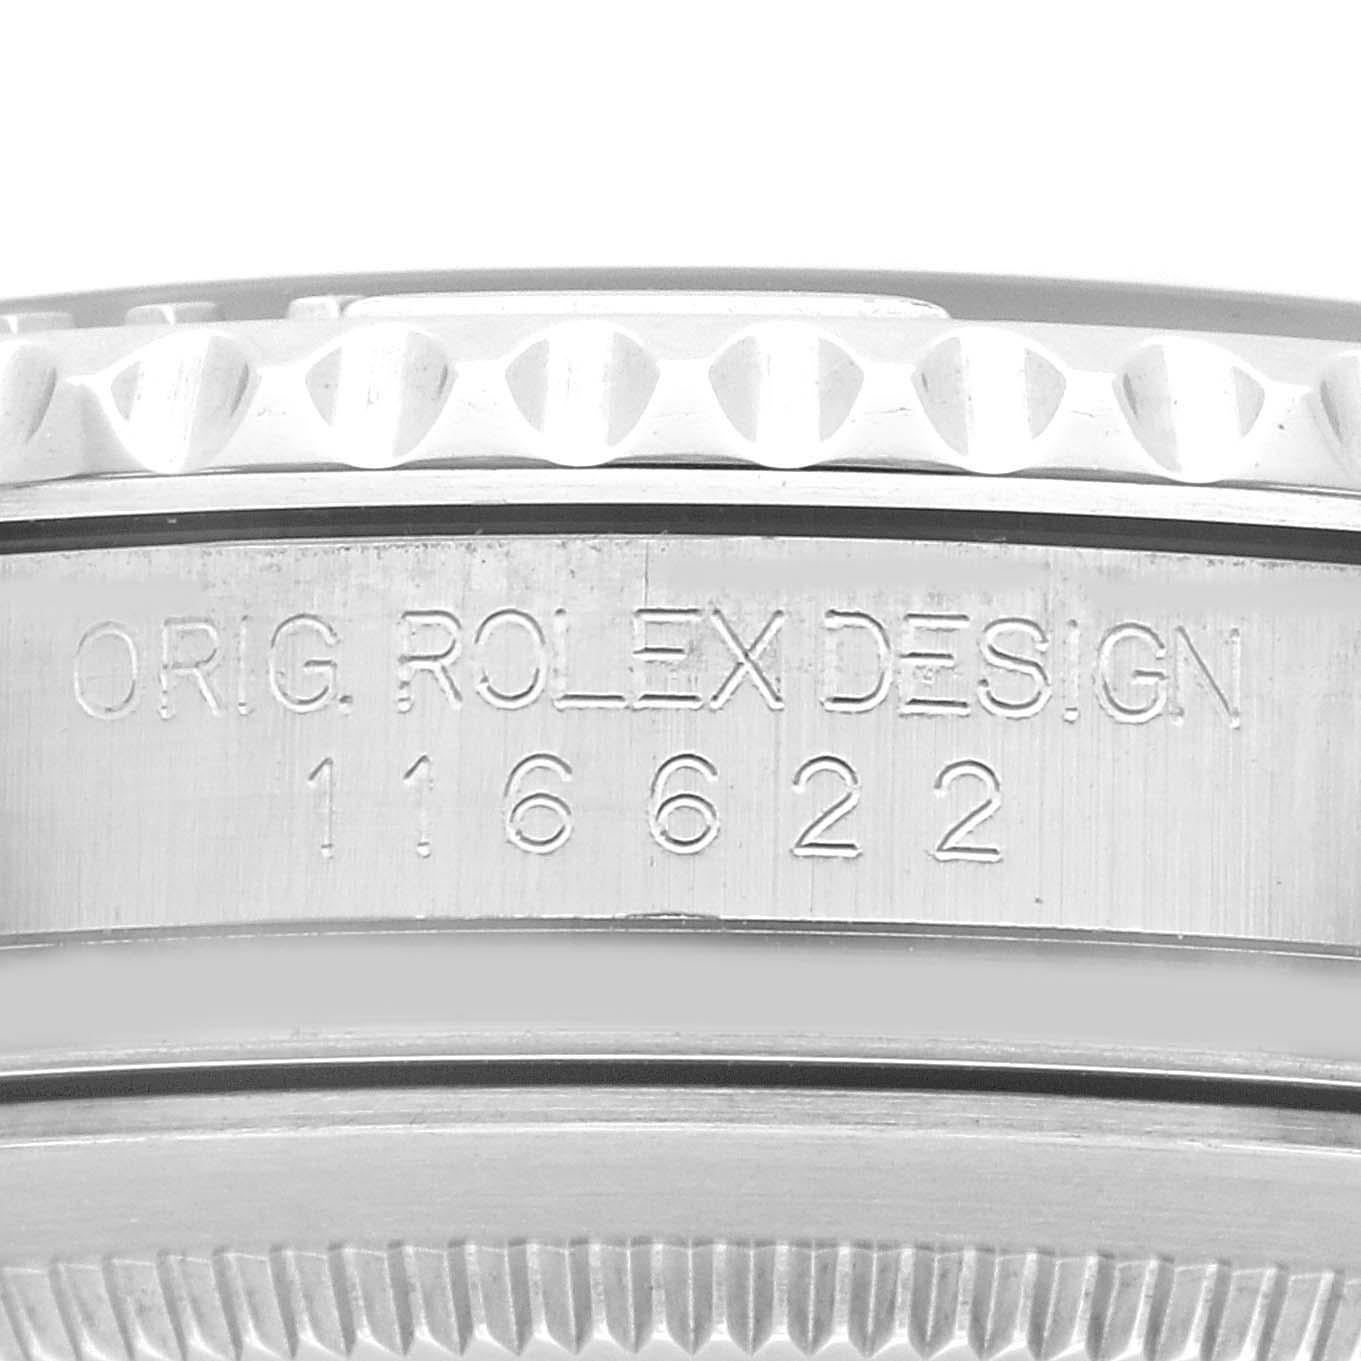 Rolex Yachtmaster Platinum Dial Steel Mens Watch 116622 Box Card. Mouvement automatique à remontage automatique, officiellement certifié chronomètre. Boîtier en acier inoxydable de 40.0 mm de diamètre. Logo Rolex sur la couronne. Lunette tournante